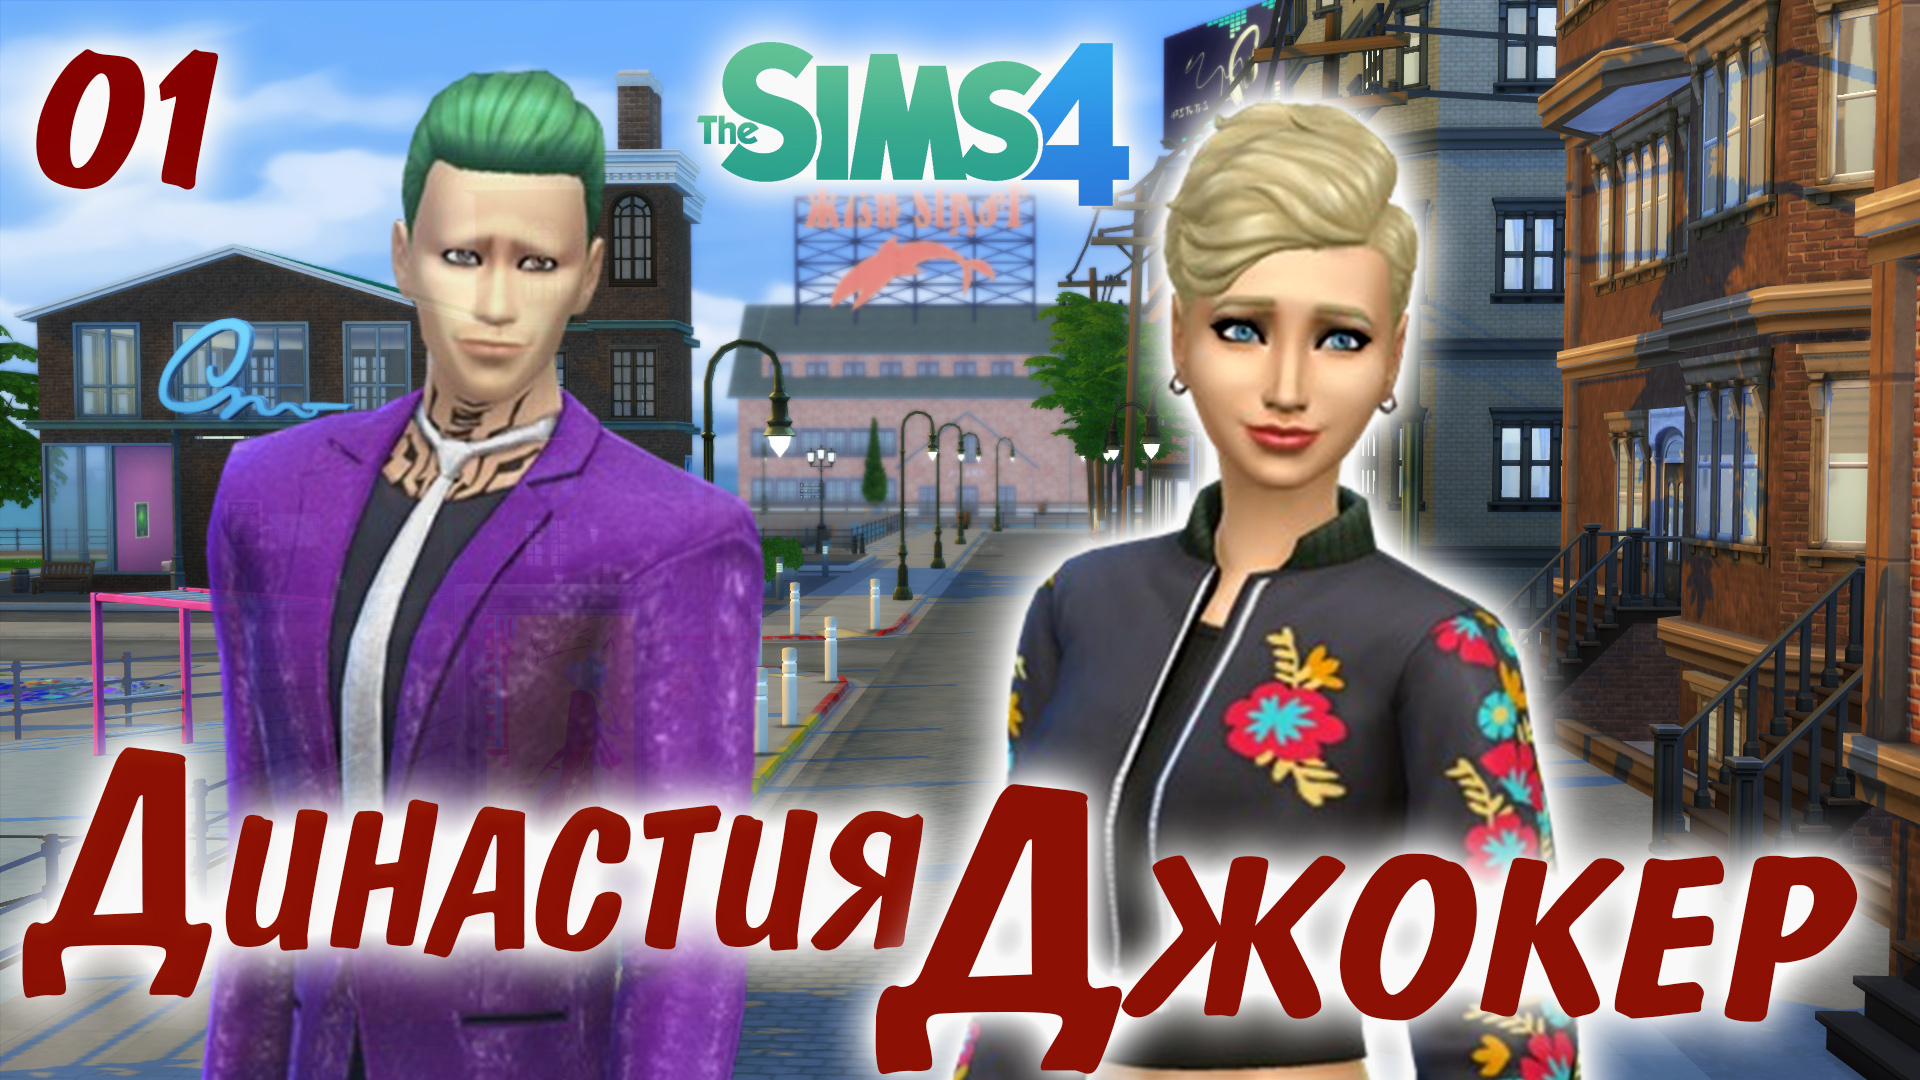 The Sims 4 Династия Джокер # 1  Знакомство и История Николетты.